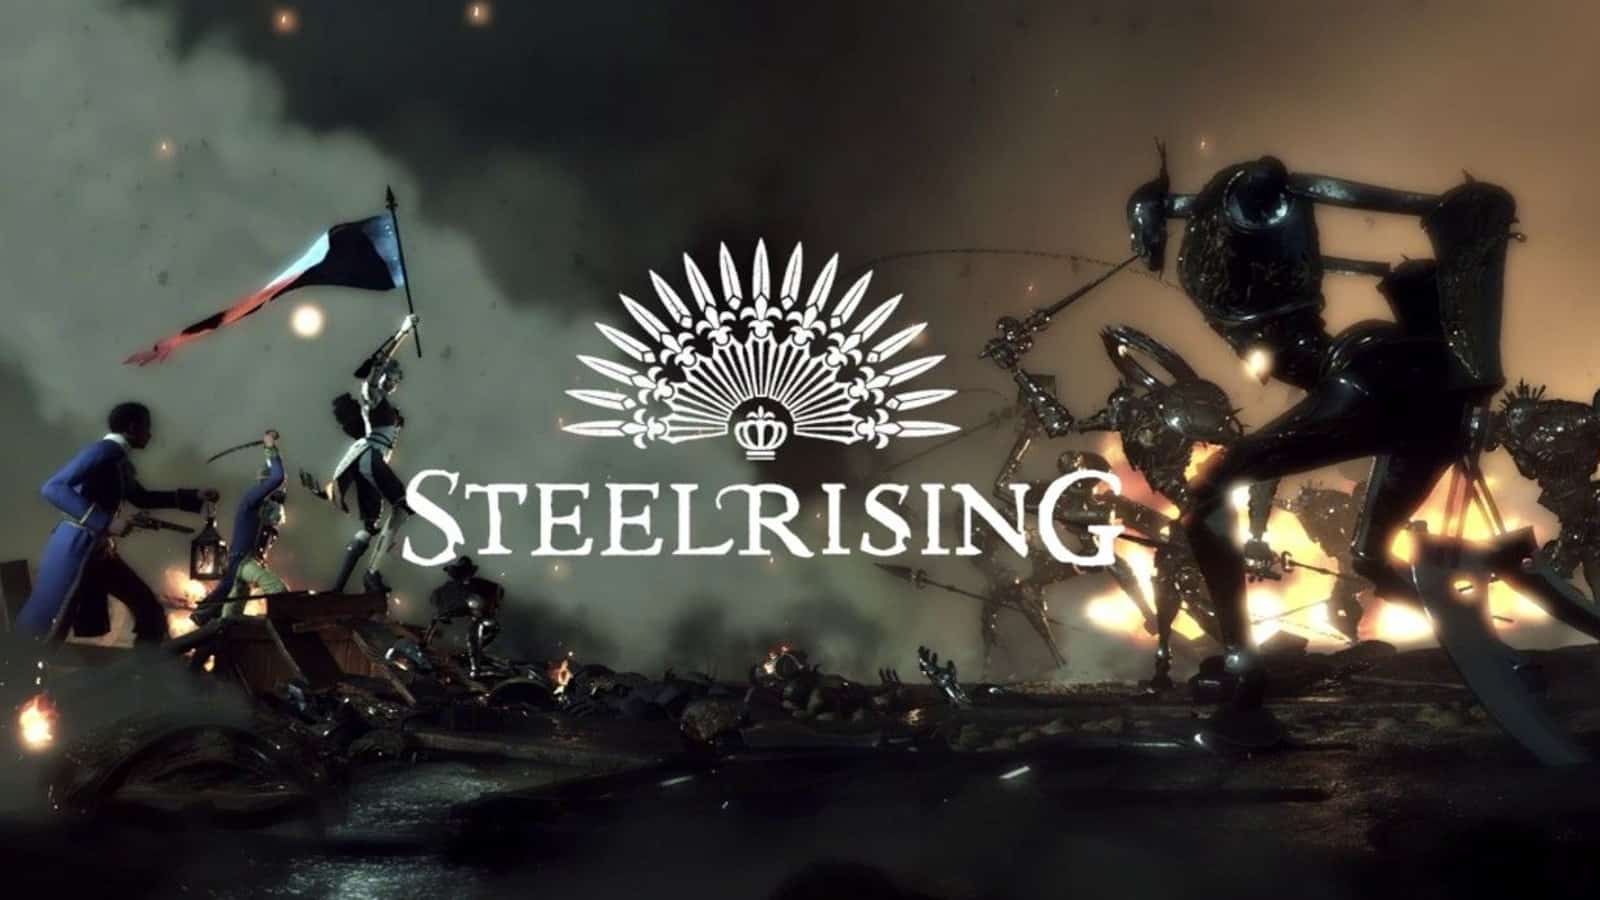 Steelrising 2021 Wallpapers